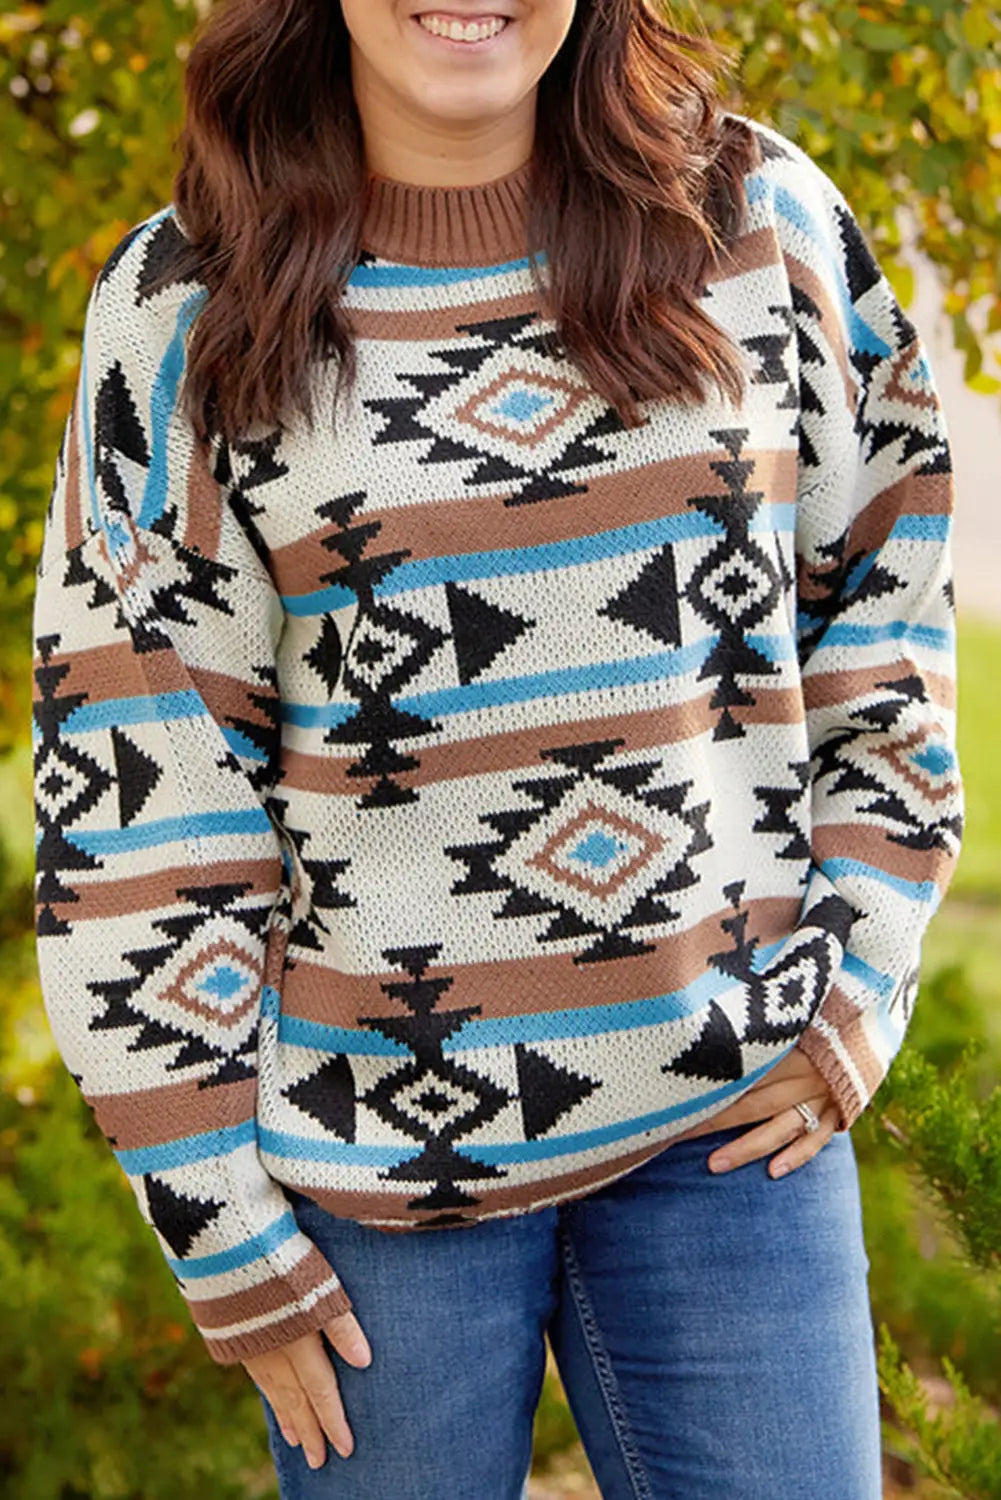 Multicolour aztec knit drop shoulder plus size sweater - 1x / 60% cotton + 40% acrylic